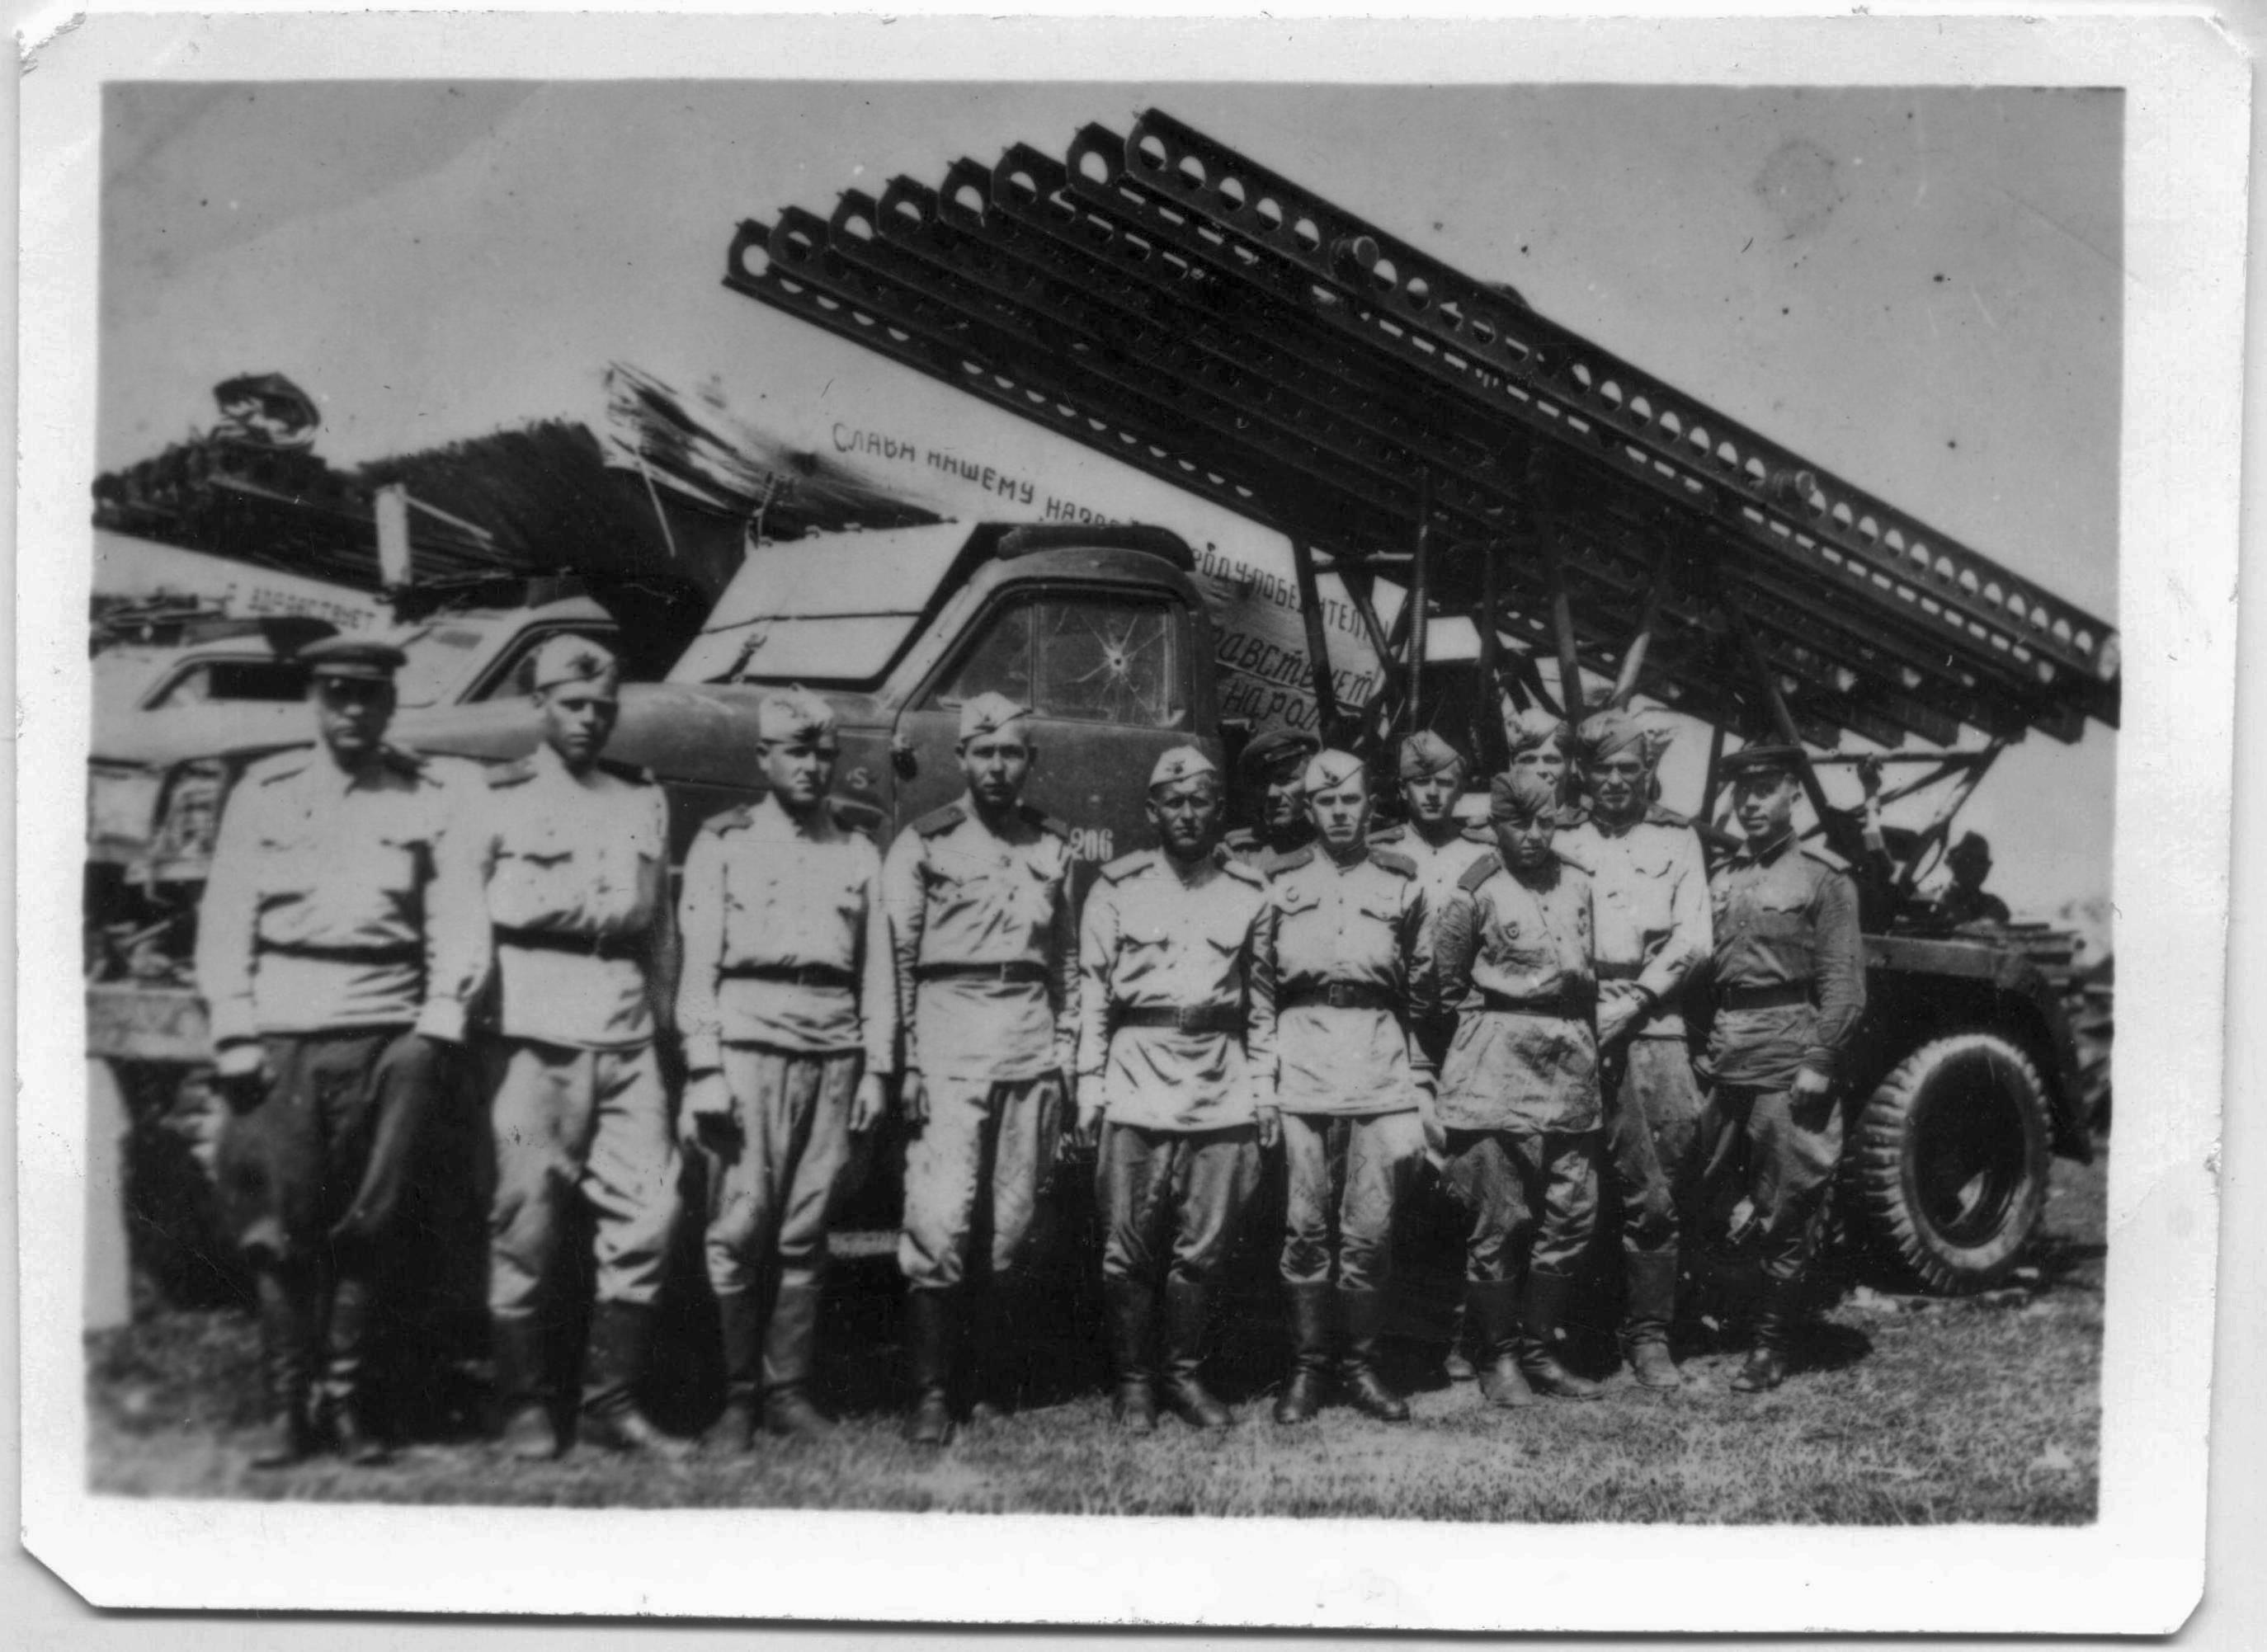 309-го гвардейского минометного полка Боевой расчет реактивной установки Катюша Мягков Петр Алексеевич стоит 2-й слева